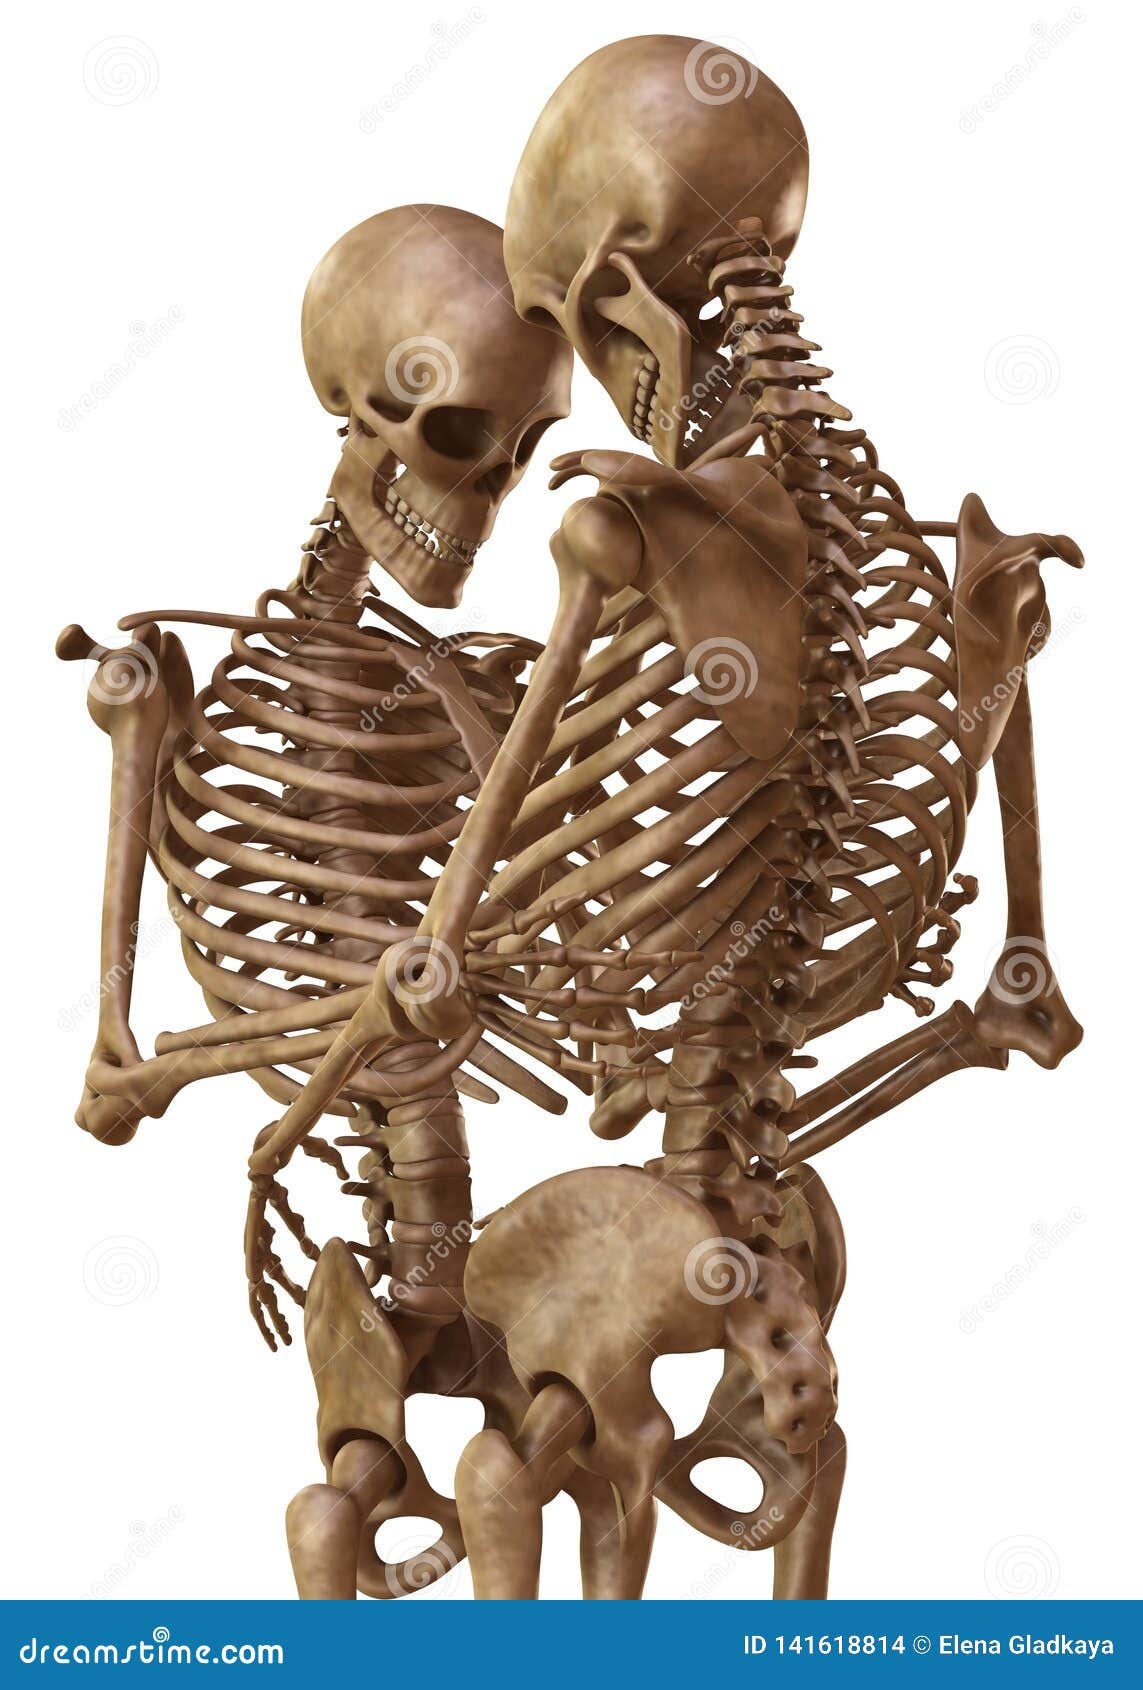 И молодые люди кости человека. Скелет мужчины и женщины. Женский скелет. Мужской скелет. Скелет человека мужской и женский.